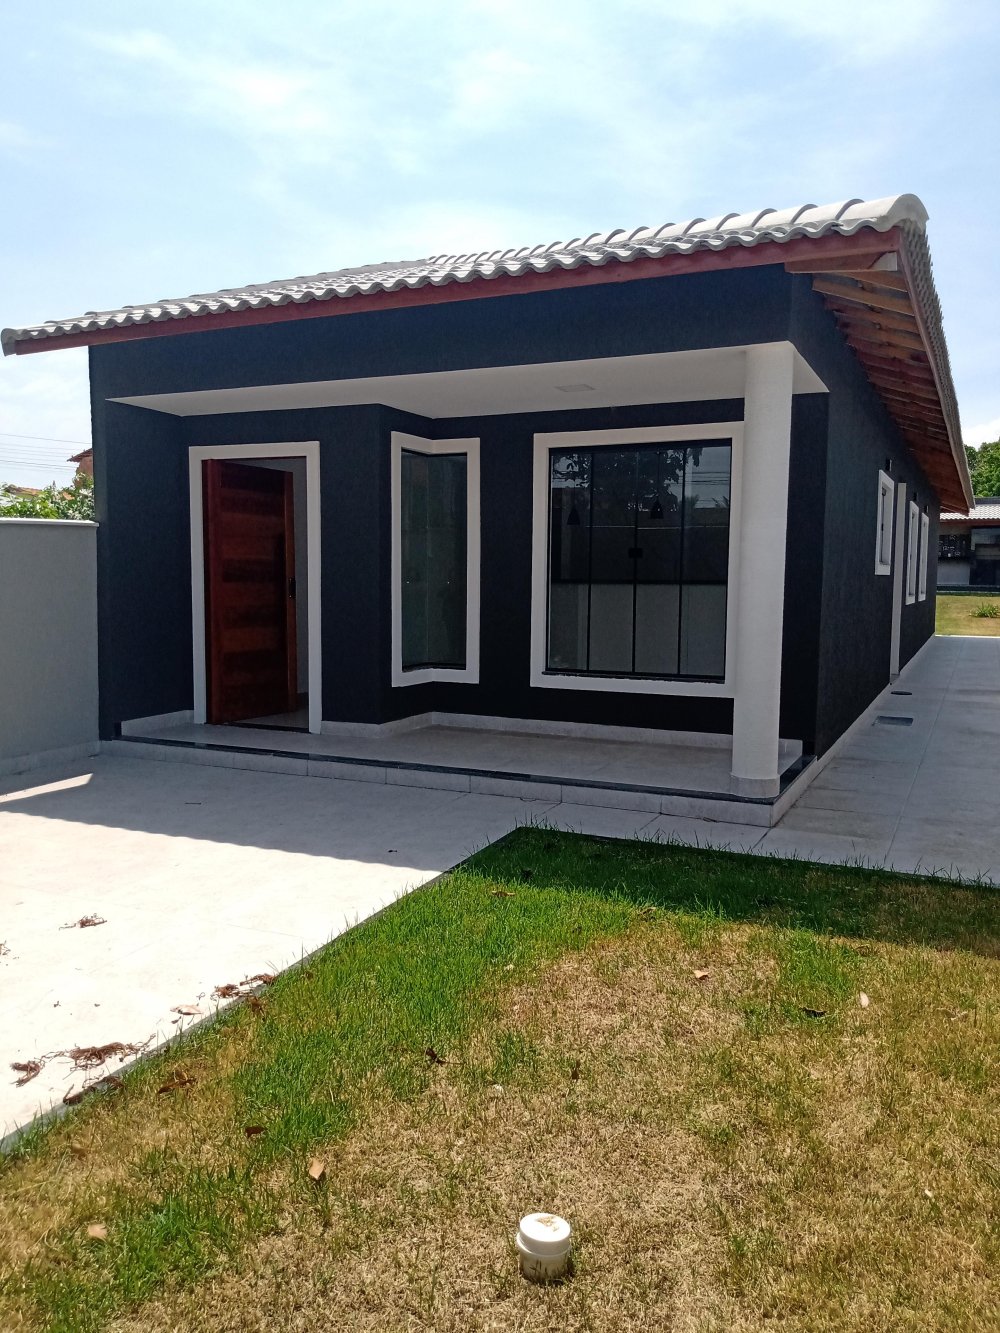 Casa  venda  no Jardim Atlntico Leste (itaipuau) - Maric, RJ. Imveis